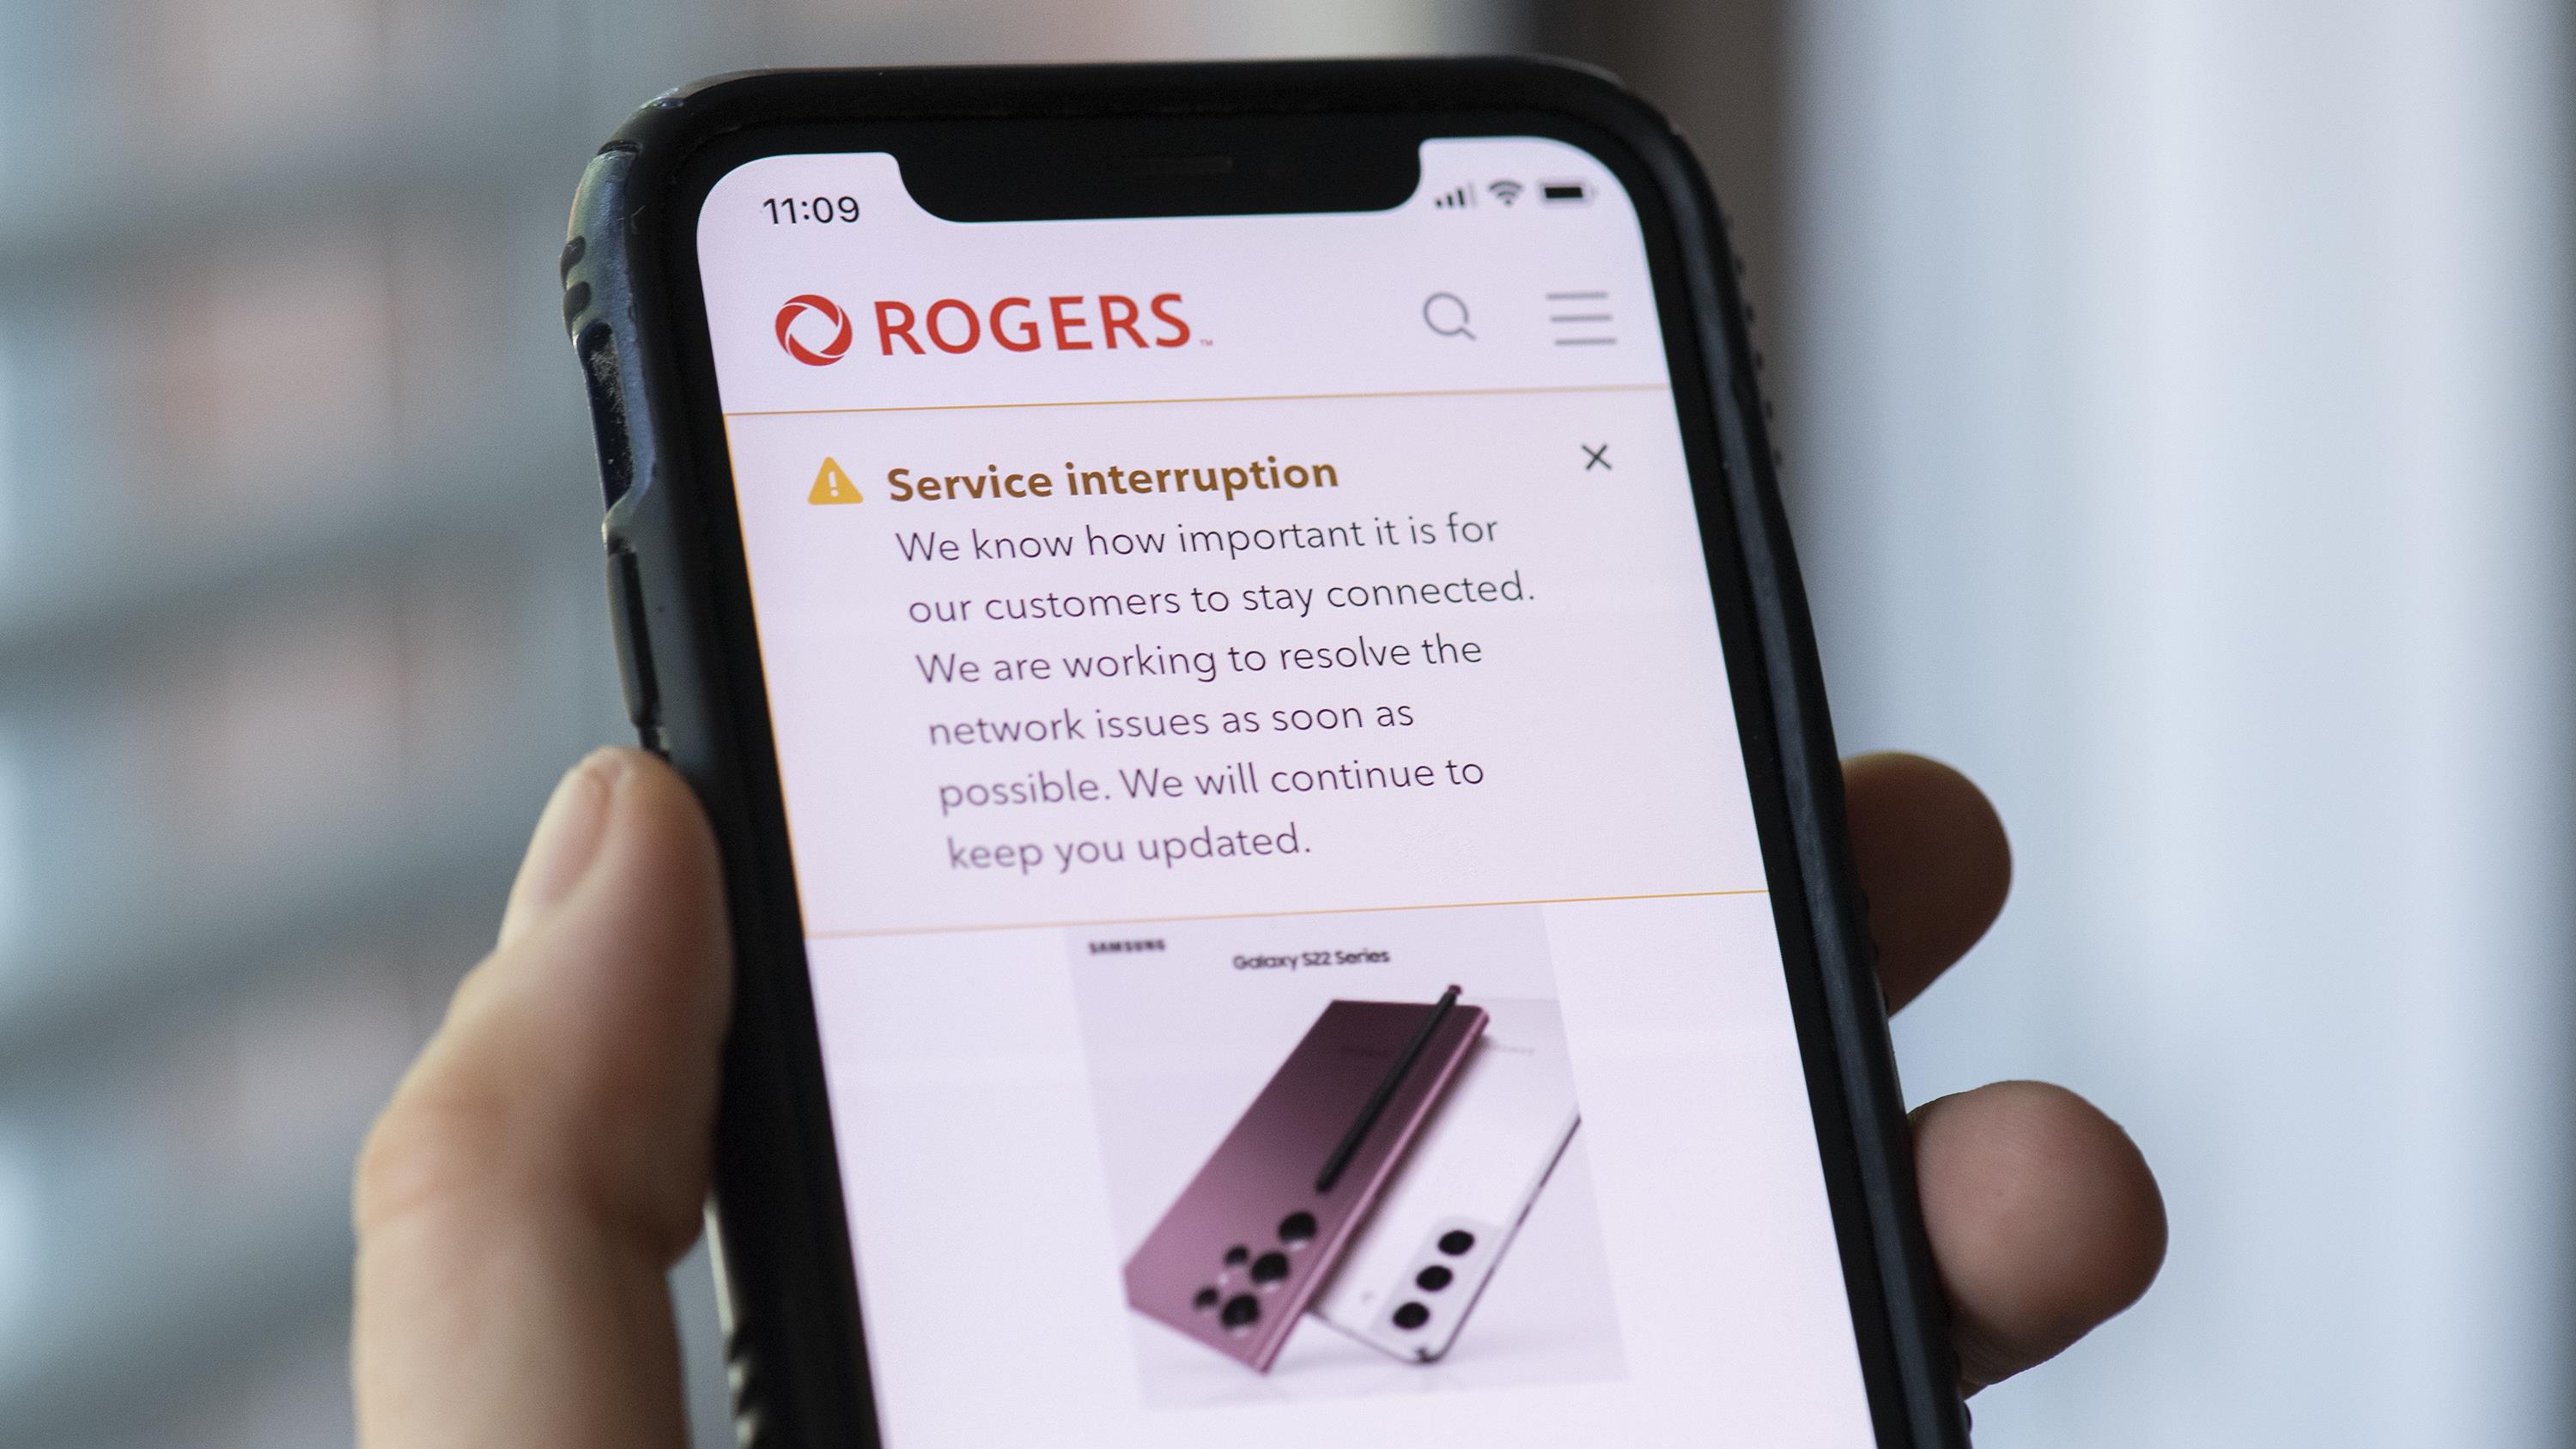 De nombreux services inaccessibles à cause d’une panne chez Rogers
De nombreux services inaccessibles à cause d’une panne chez Rogers